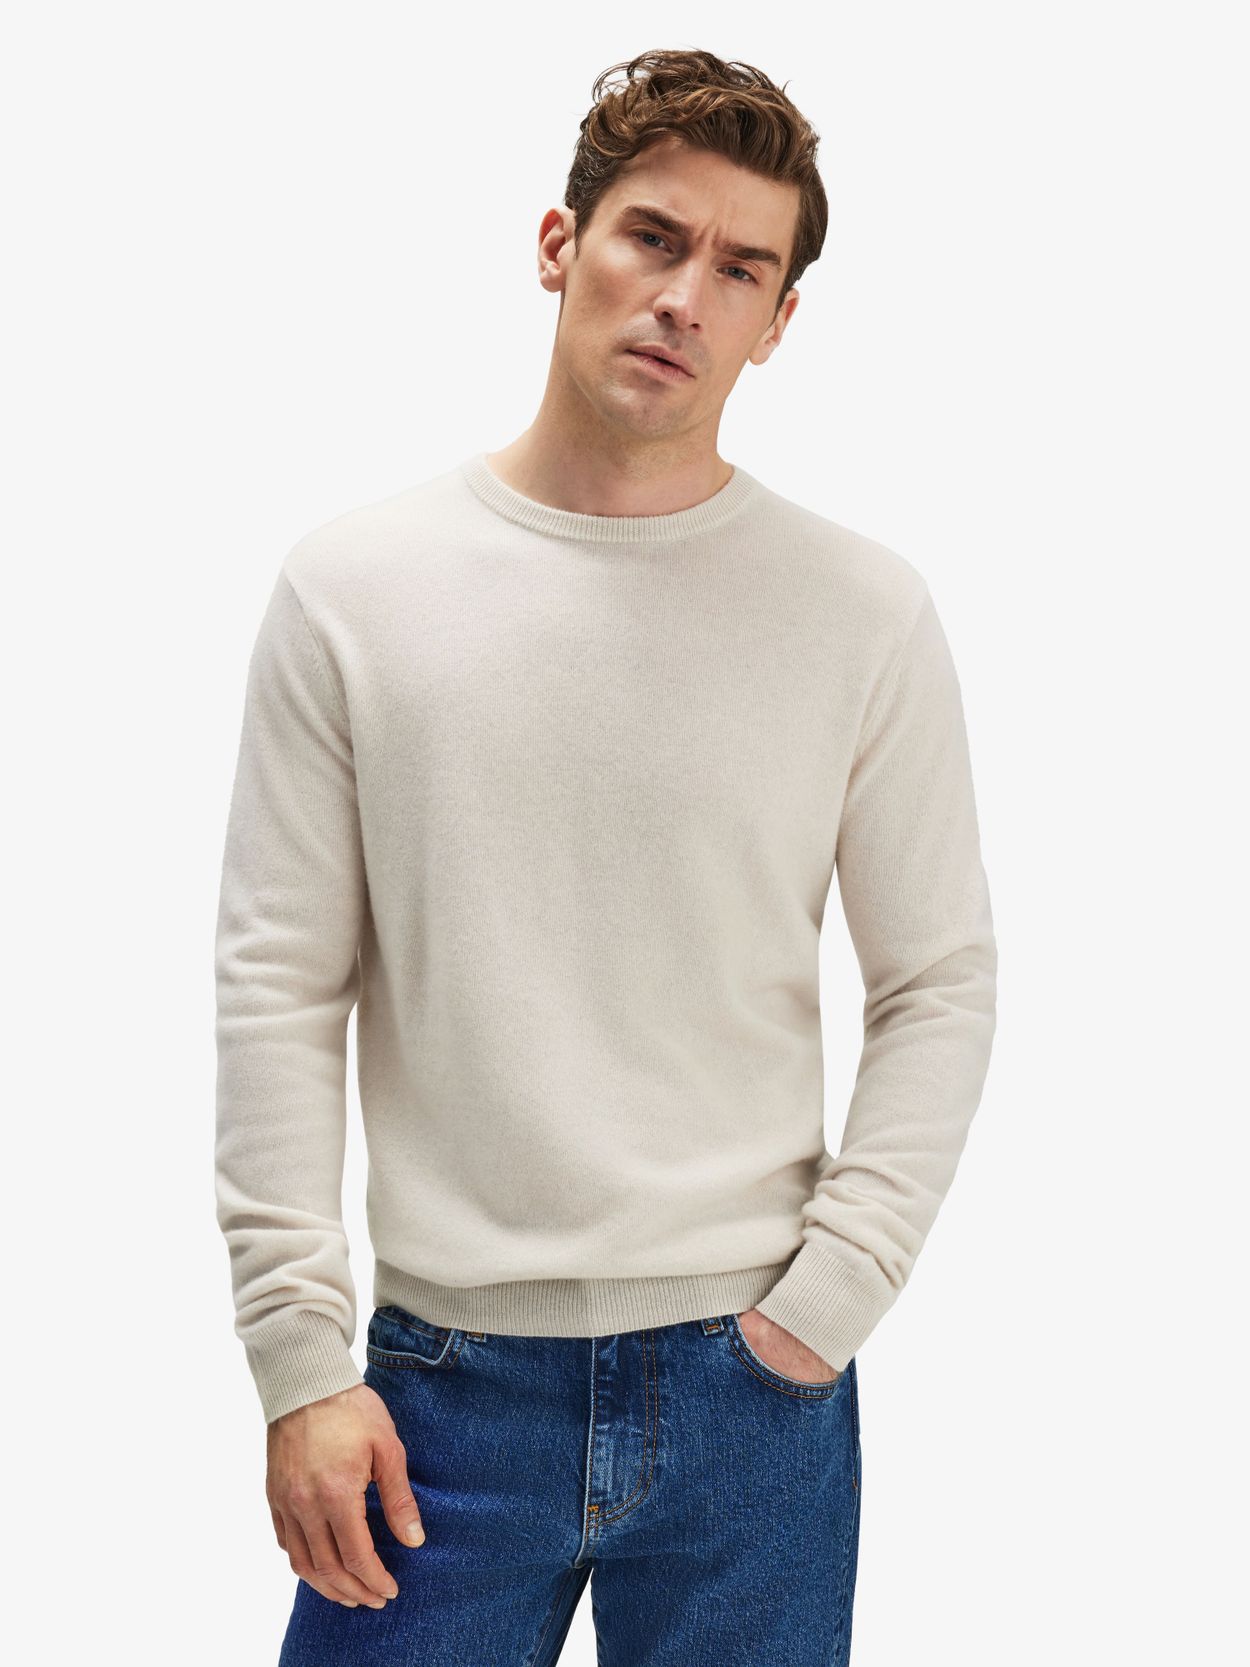 Off White Cashmere Sweater